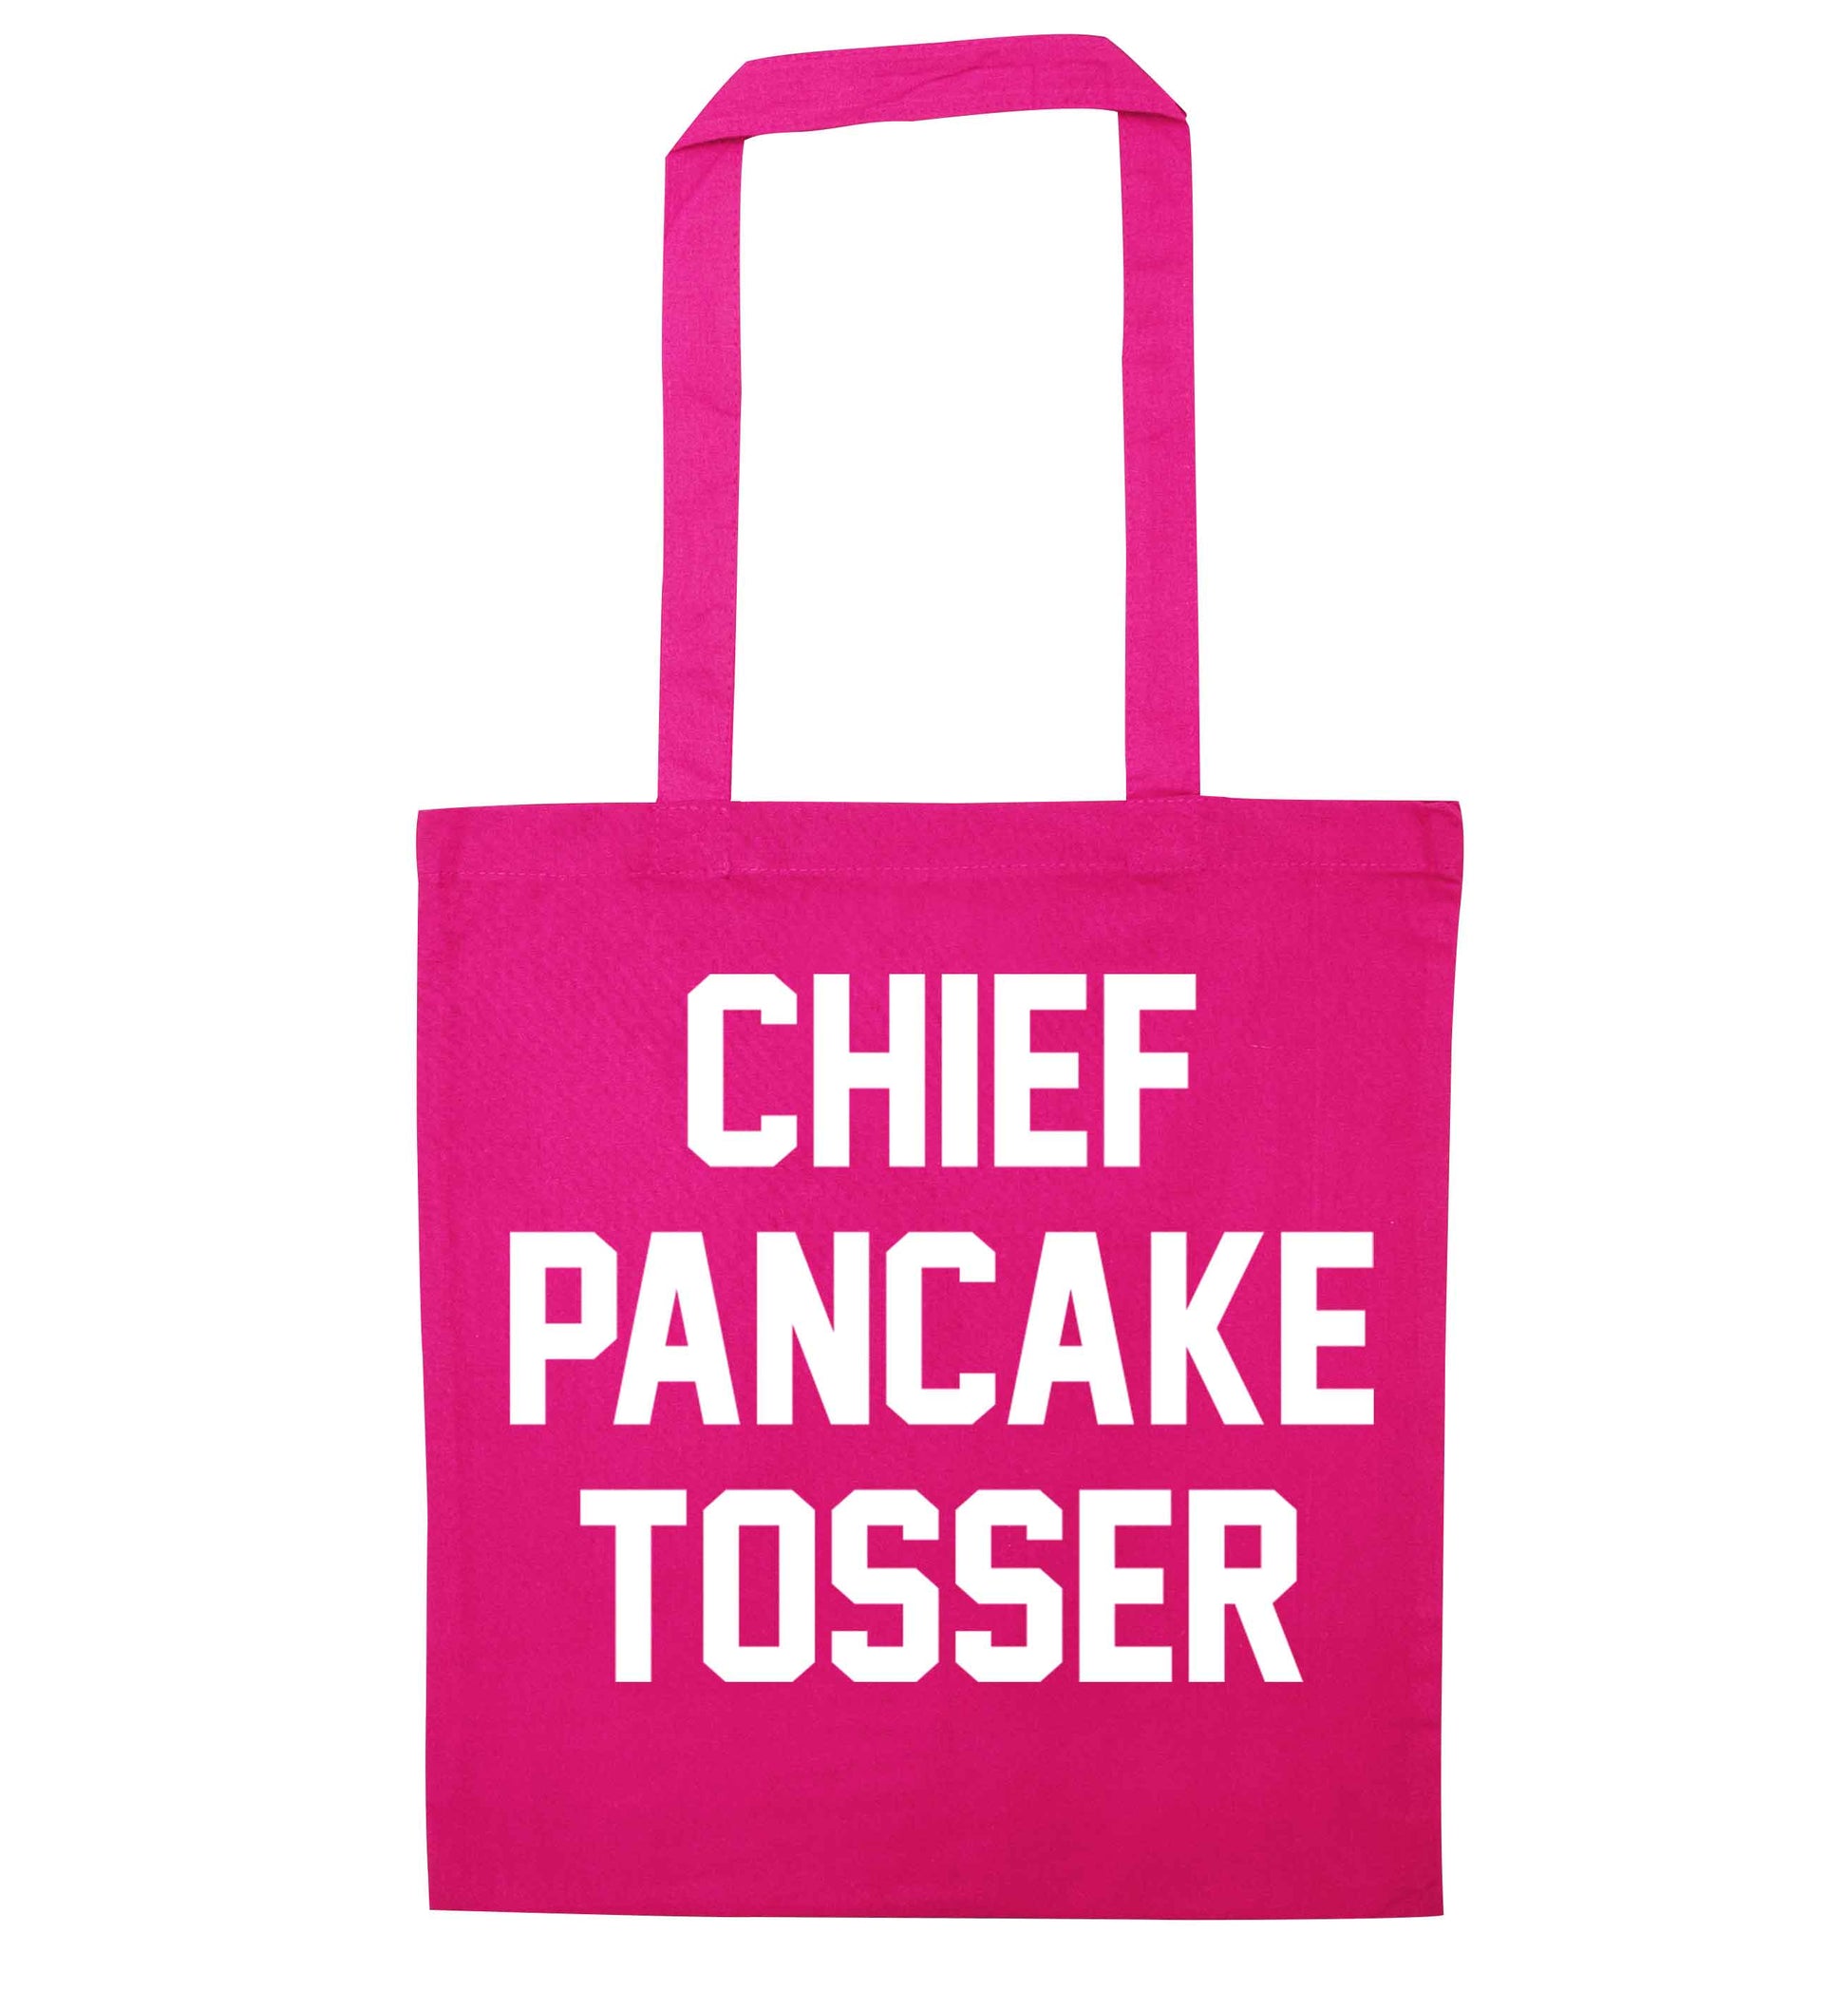 Chief pancake tosser pink tote bag